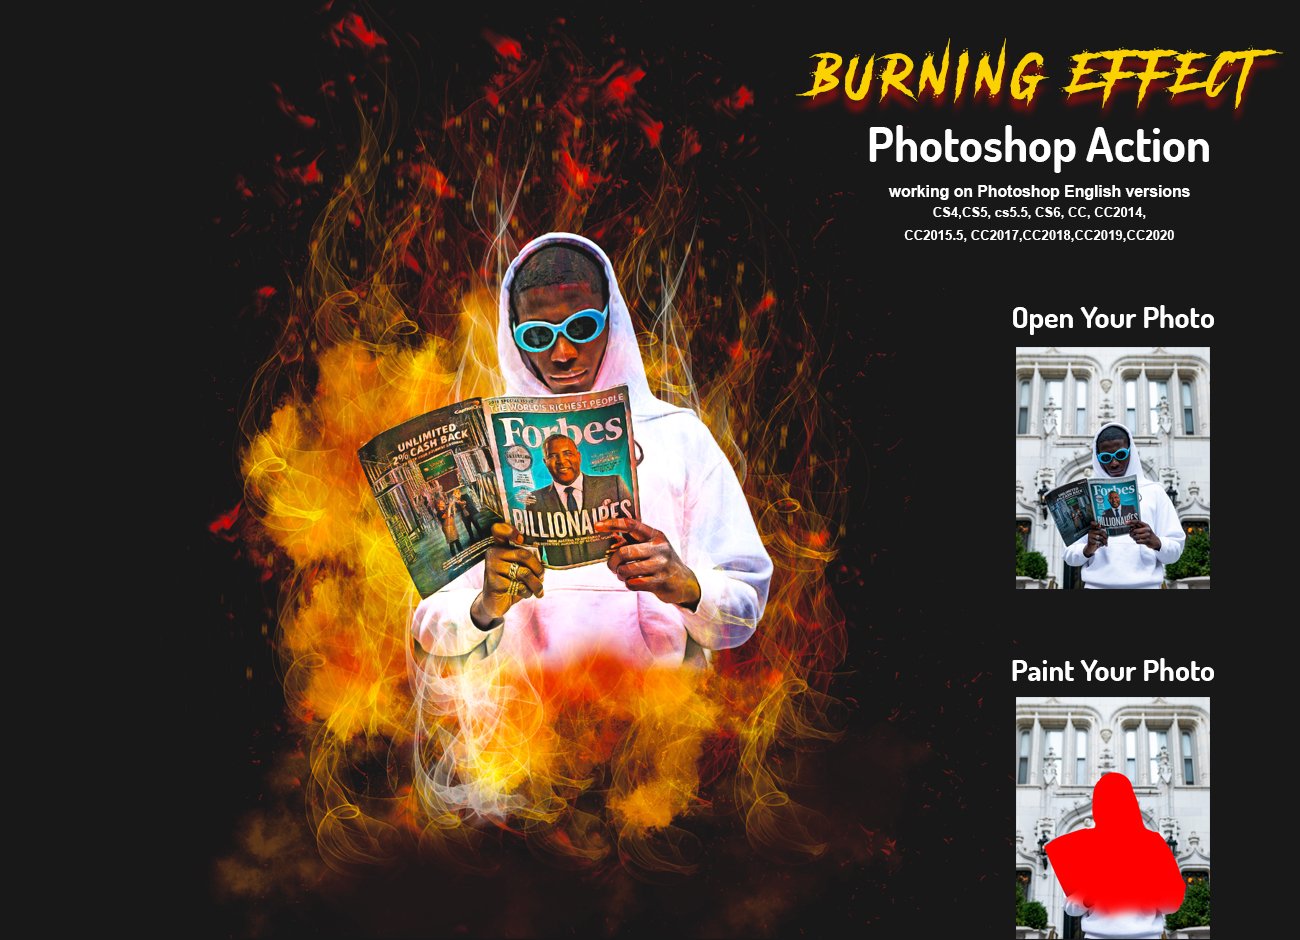 Burning Effect Photoshop Actioncover image.